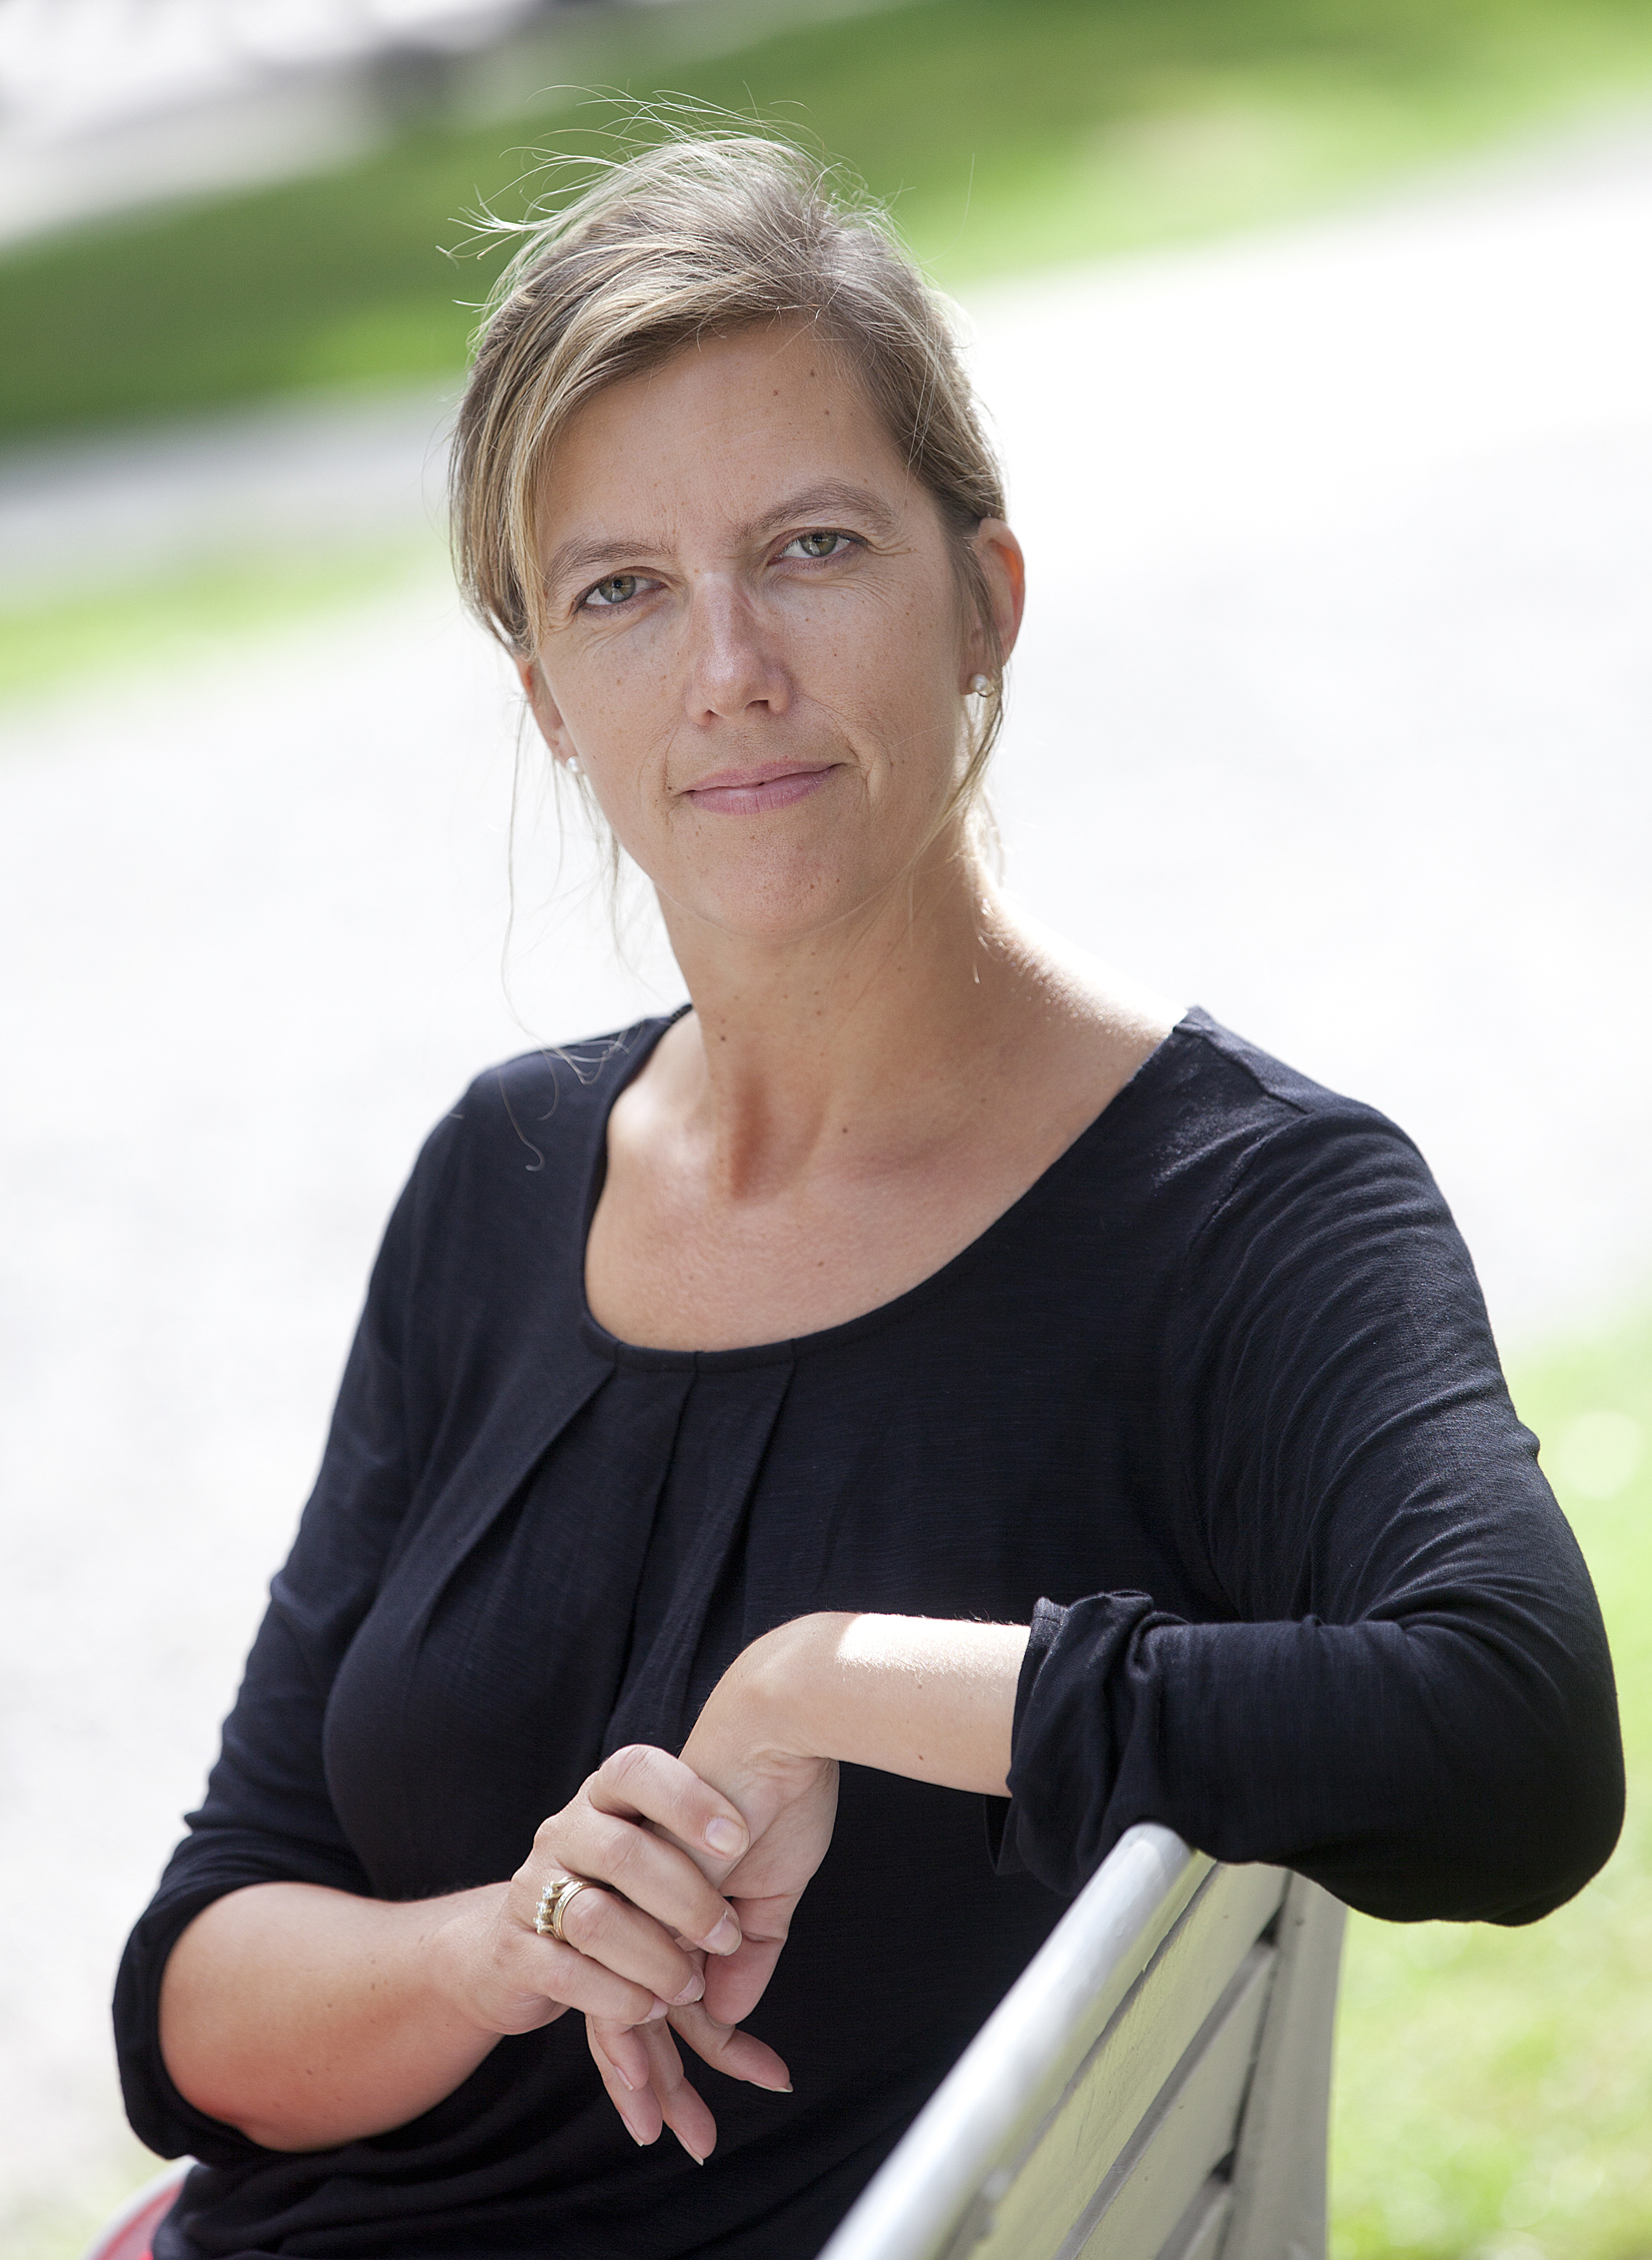 Dr. Monica Bravo GranströmGeschäftsführerin & Projektleiterin International Teaching